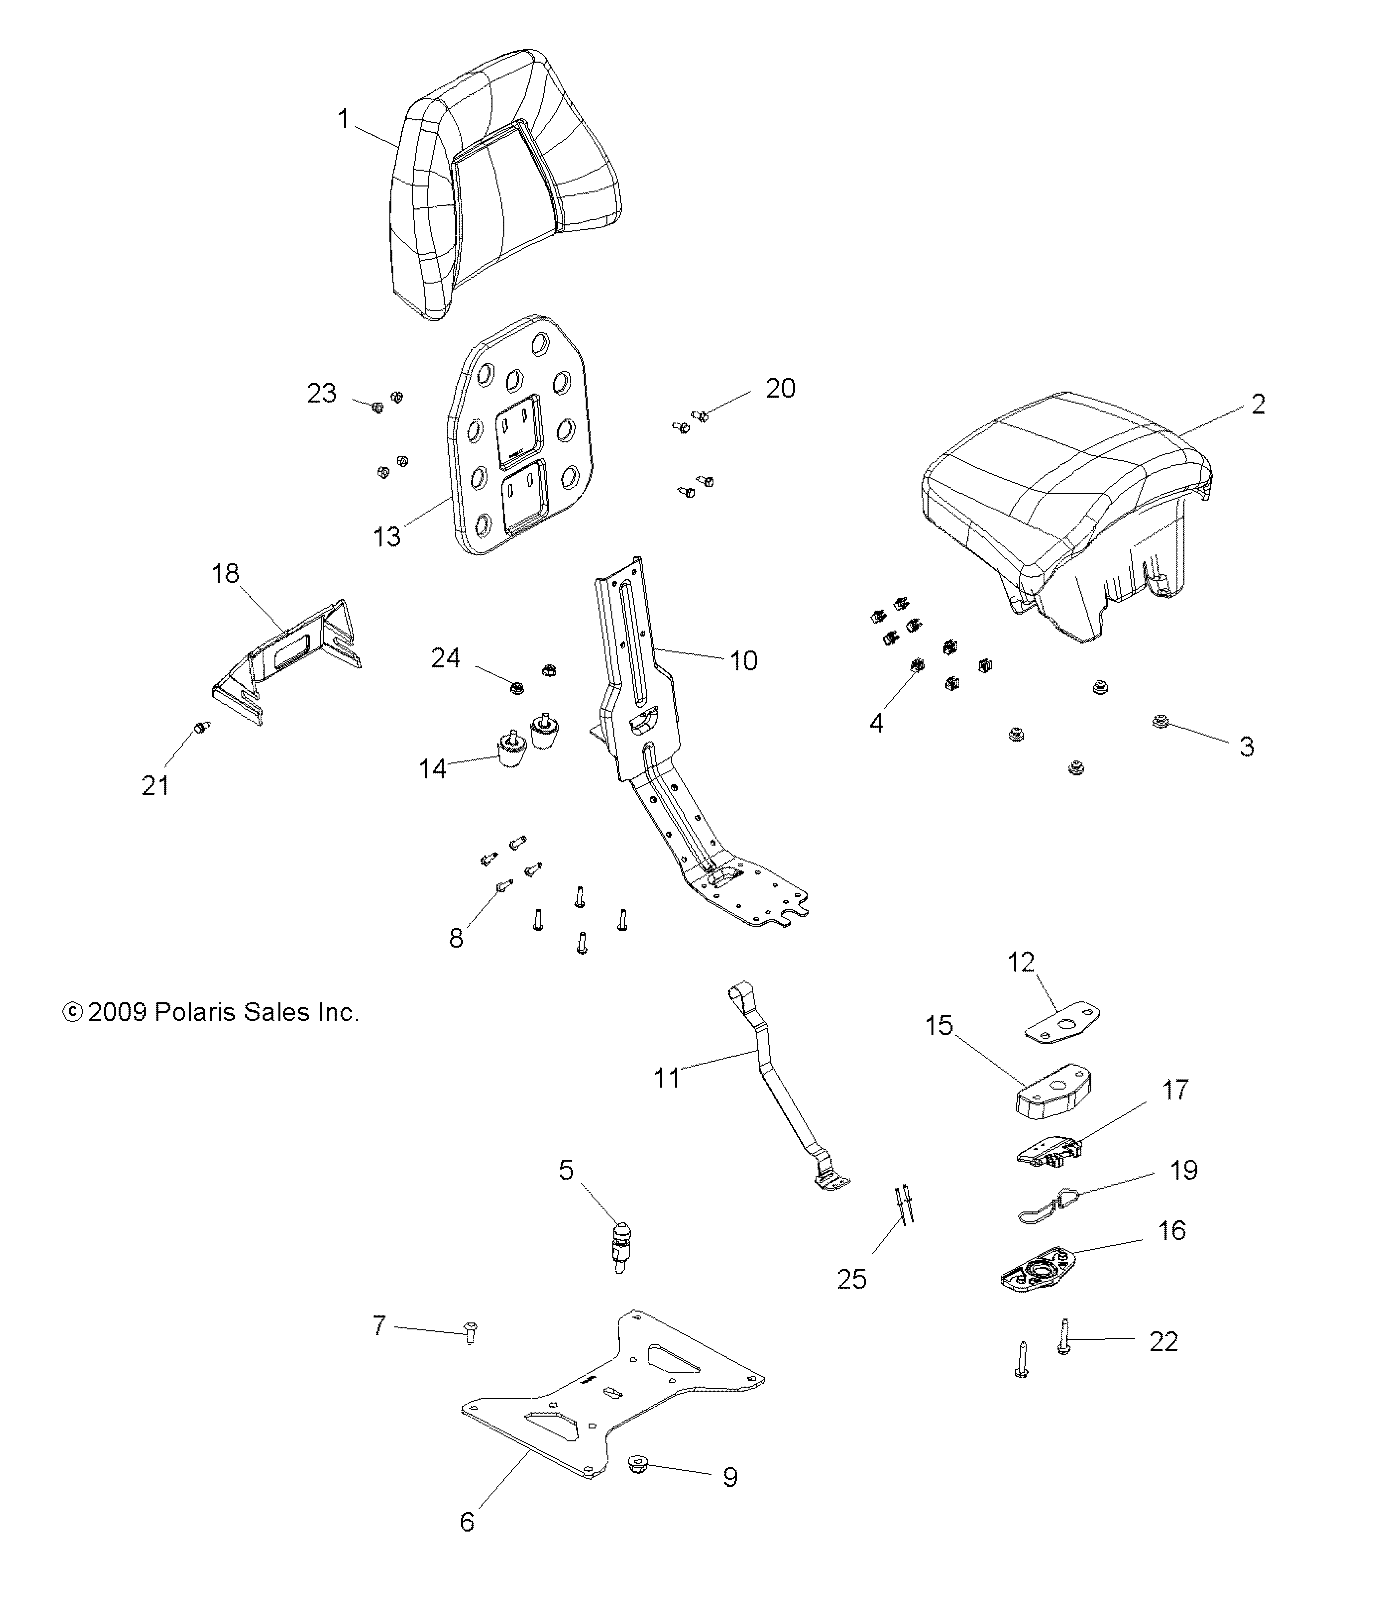 Foto diagrama Polaris que contem a peça 2684130